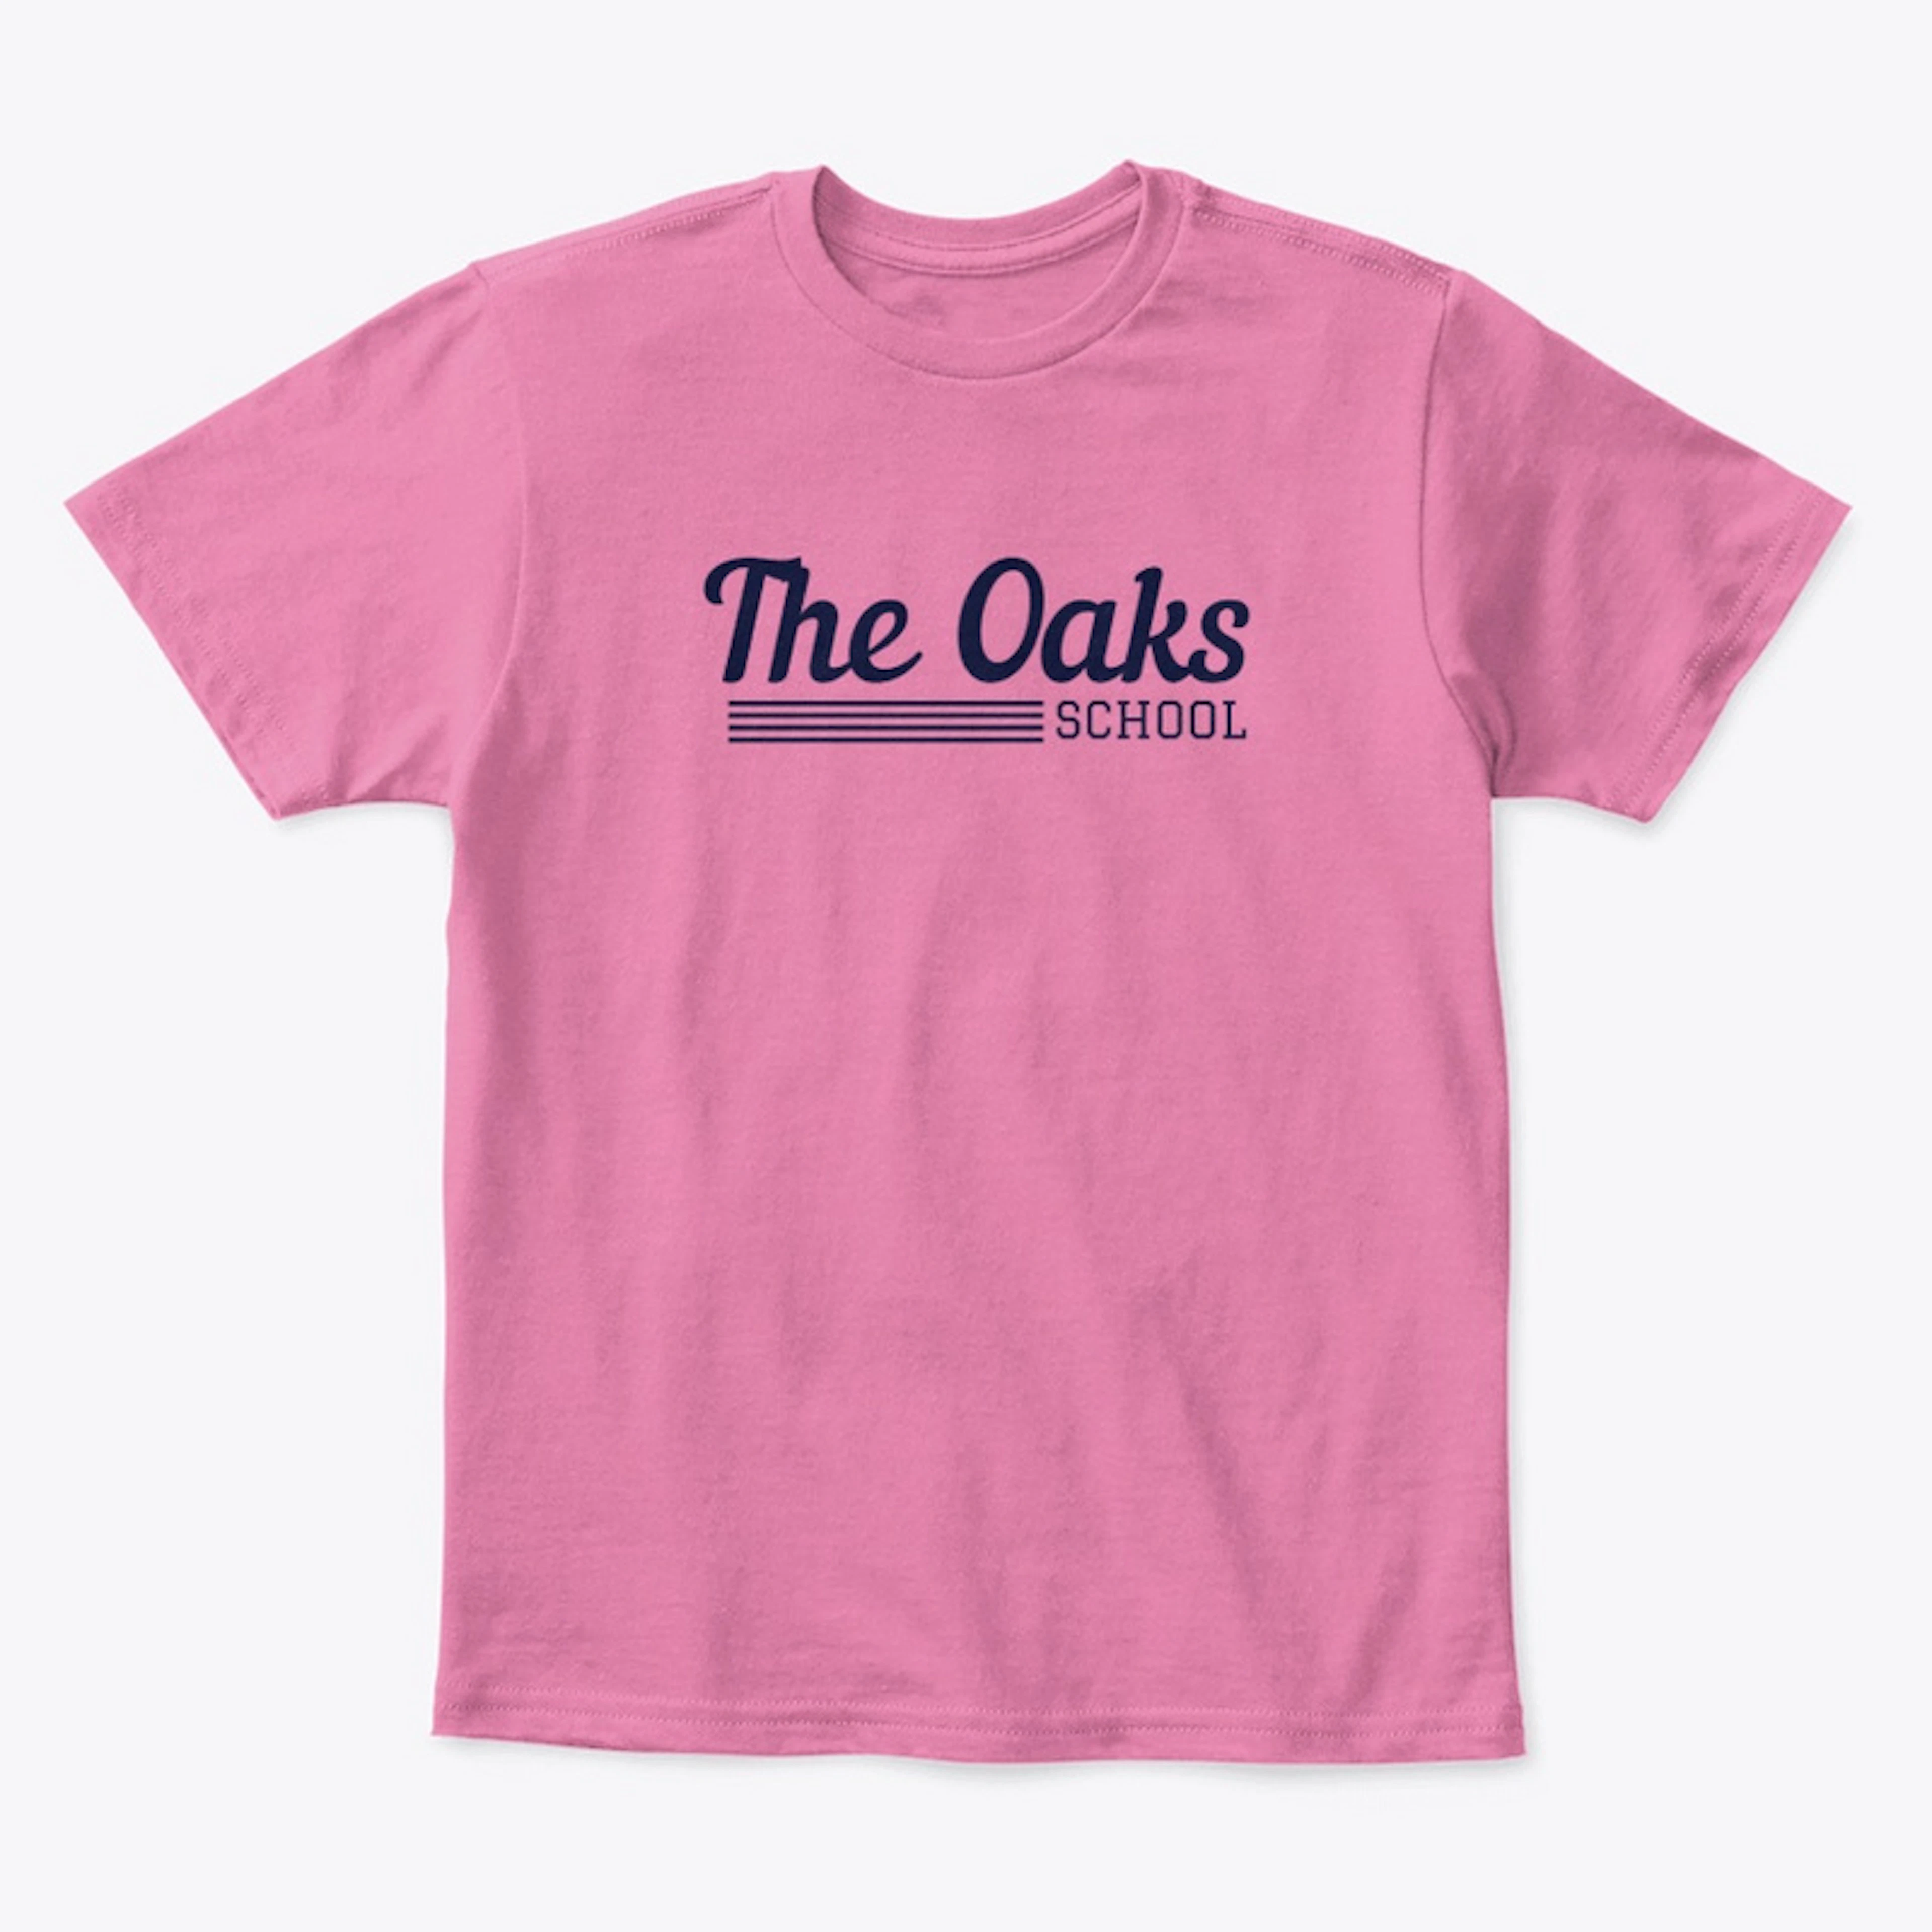 The Oaks School - Kid Sizes